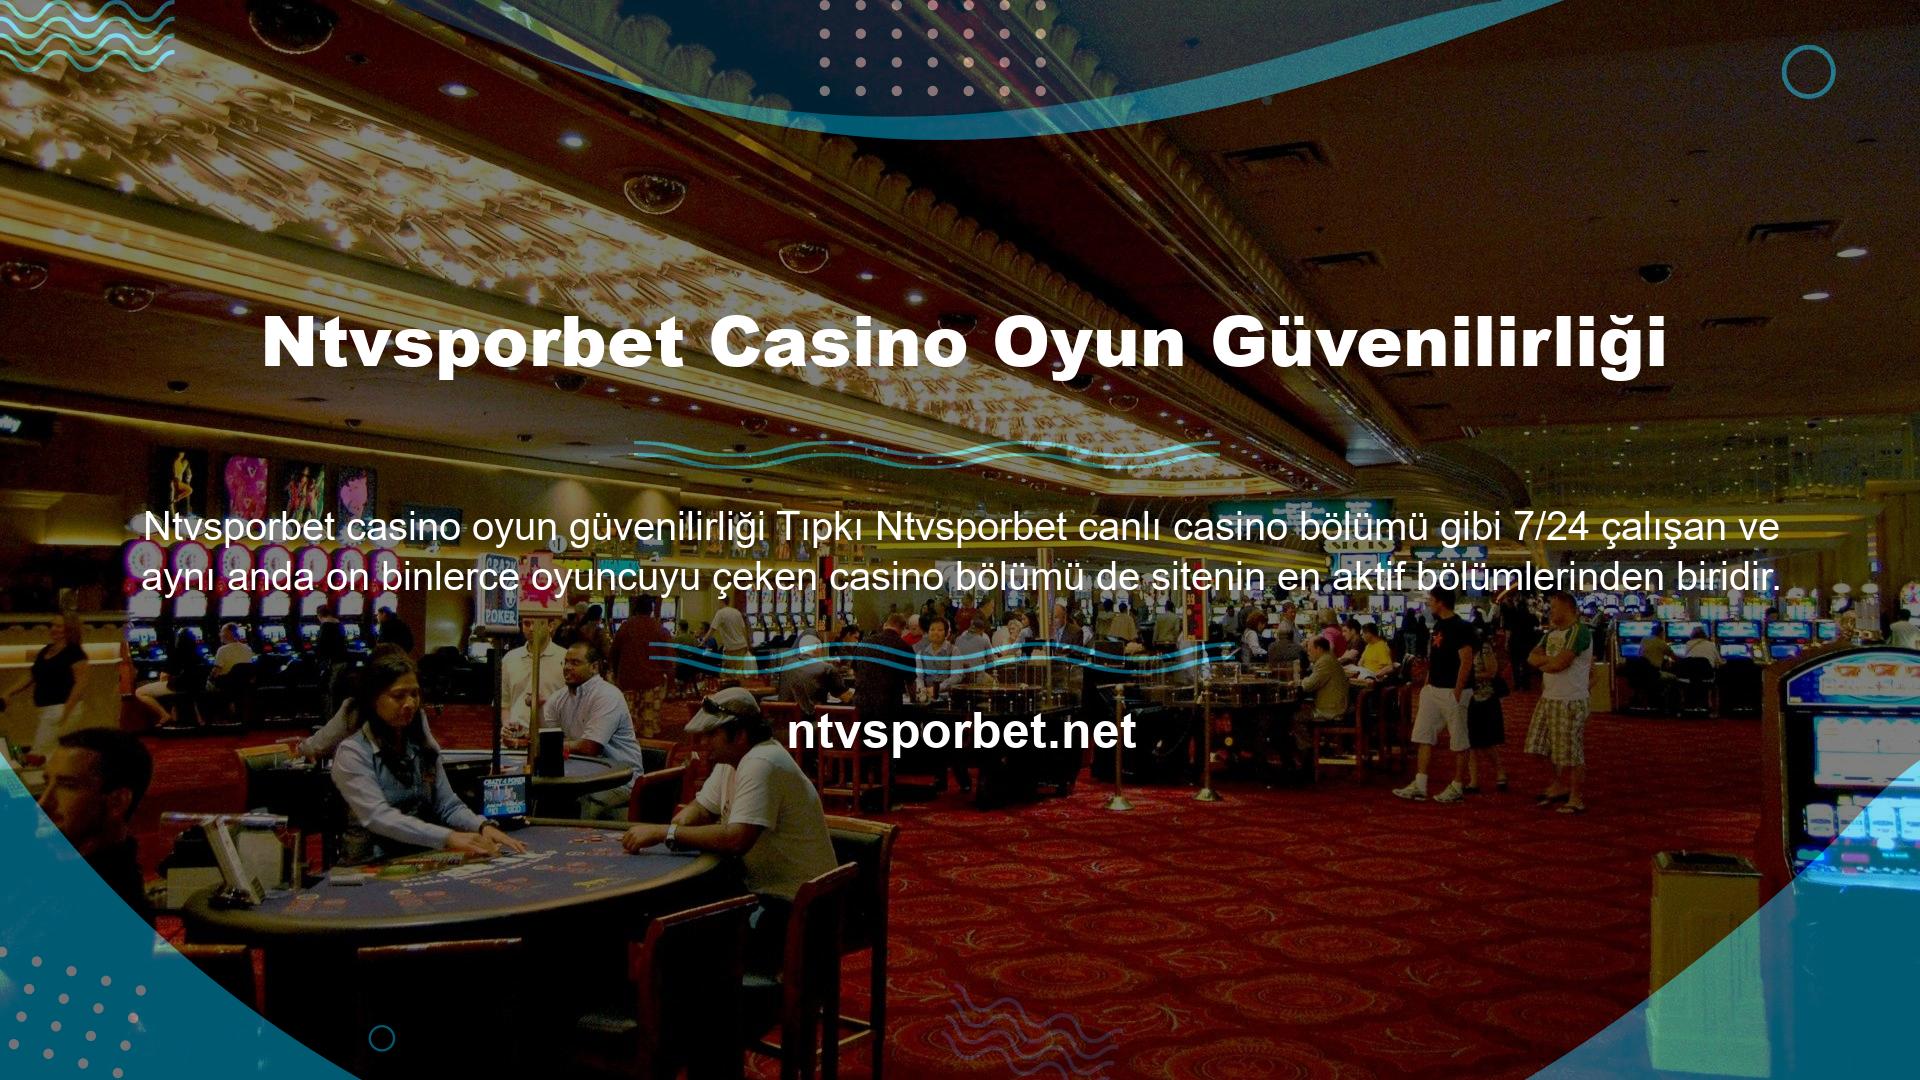 Ntvsporbet oyun sitesi, geniş casino oyunları yelpazesiyle dikkatleri üzerine çekmiş ve özellikle şansa inanan ve oyunlarının güvenilirliğine değer verenler tarafından beğenilmektedir